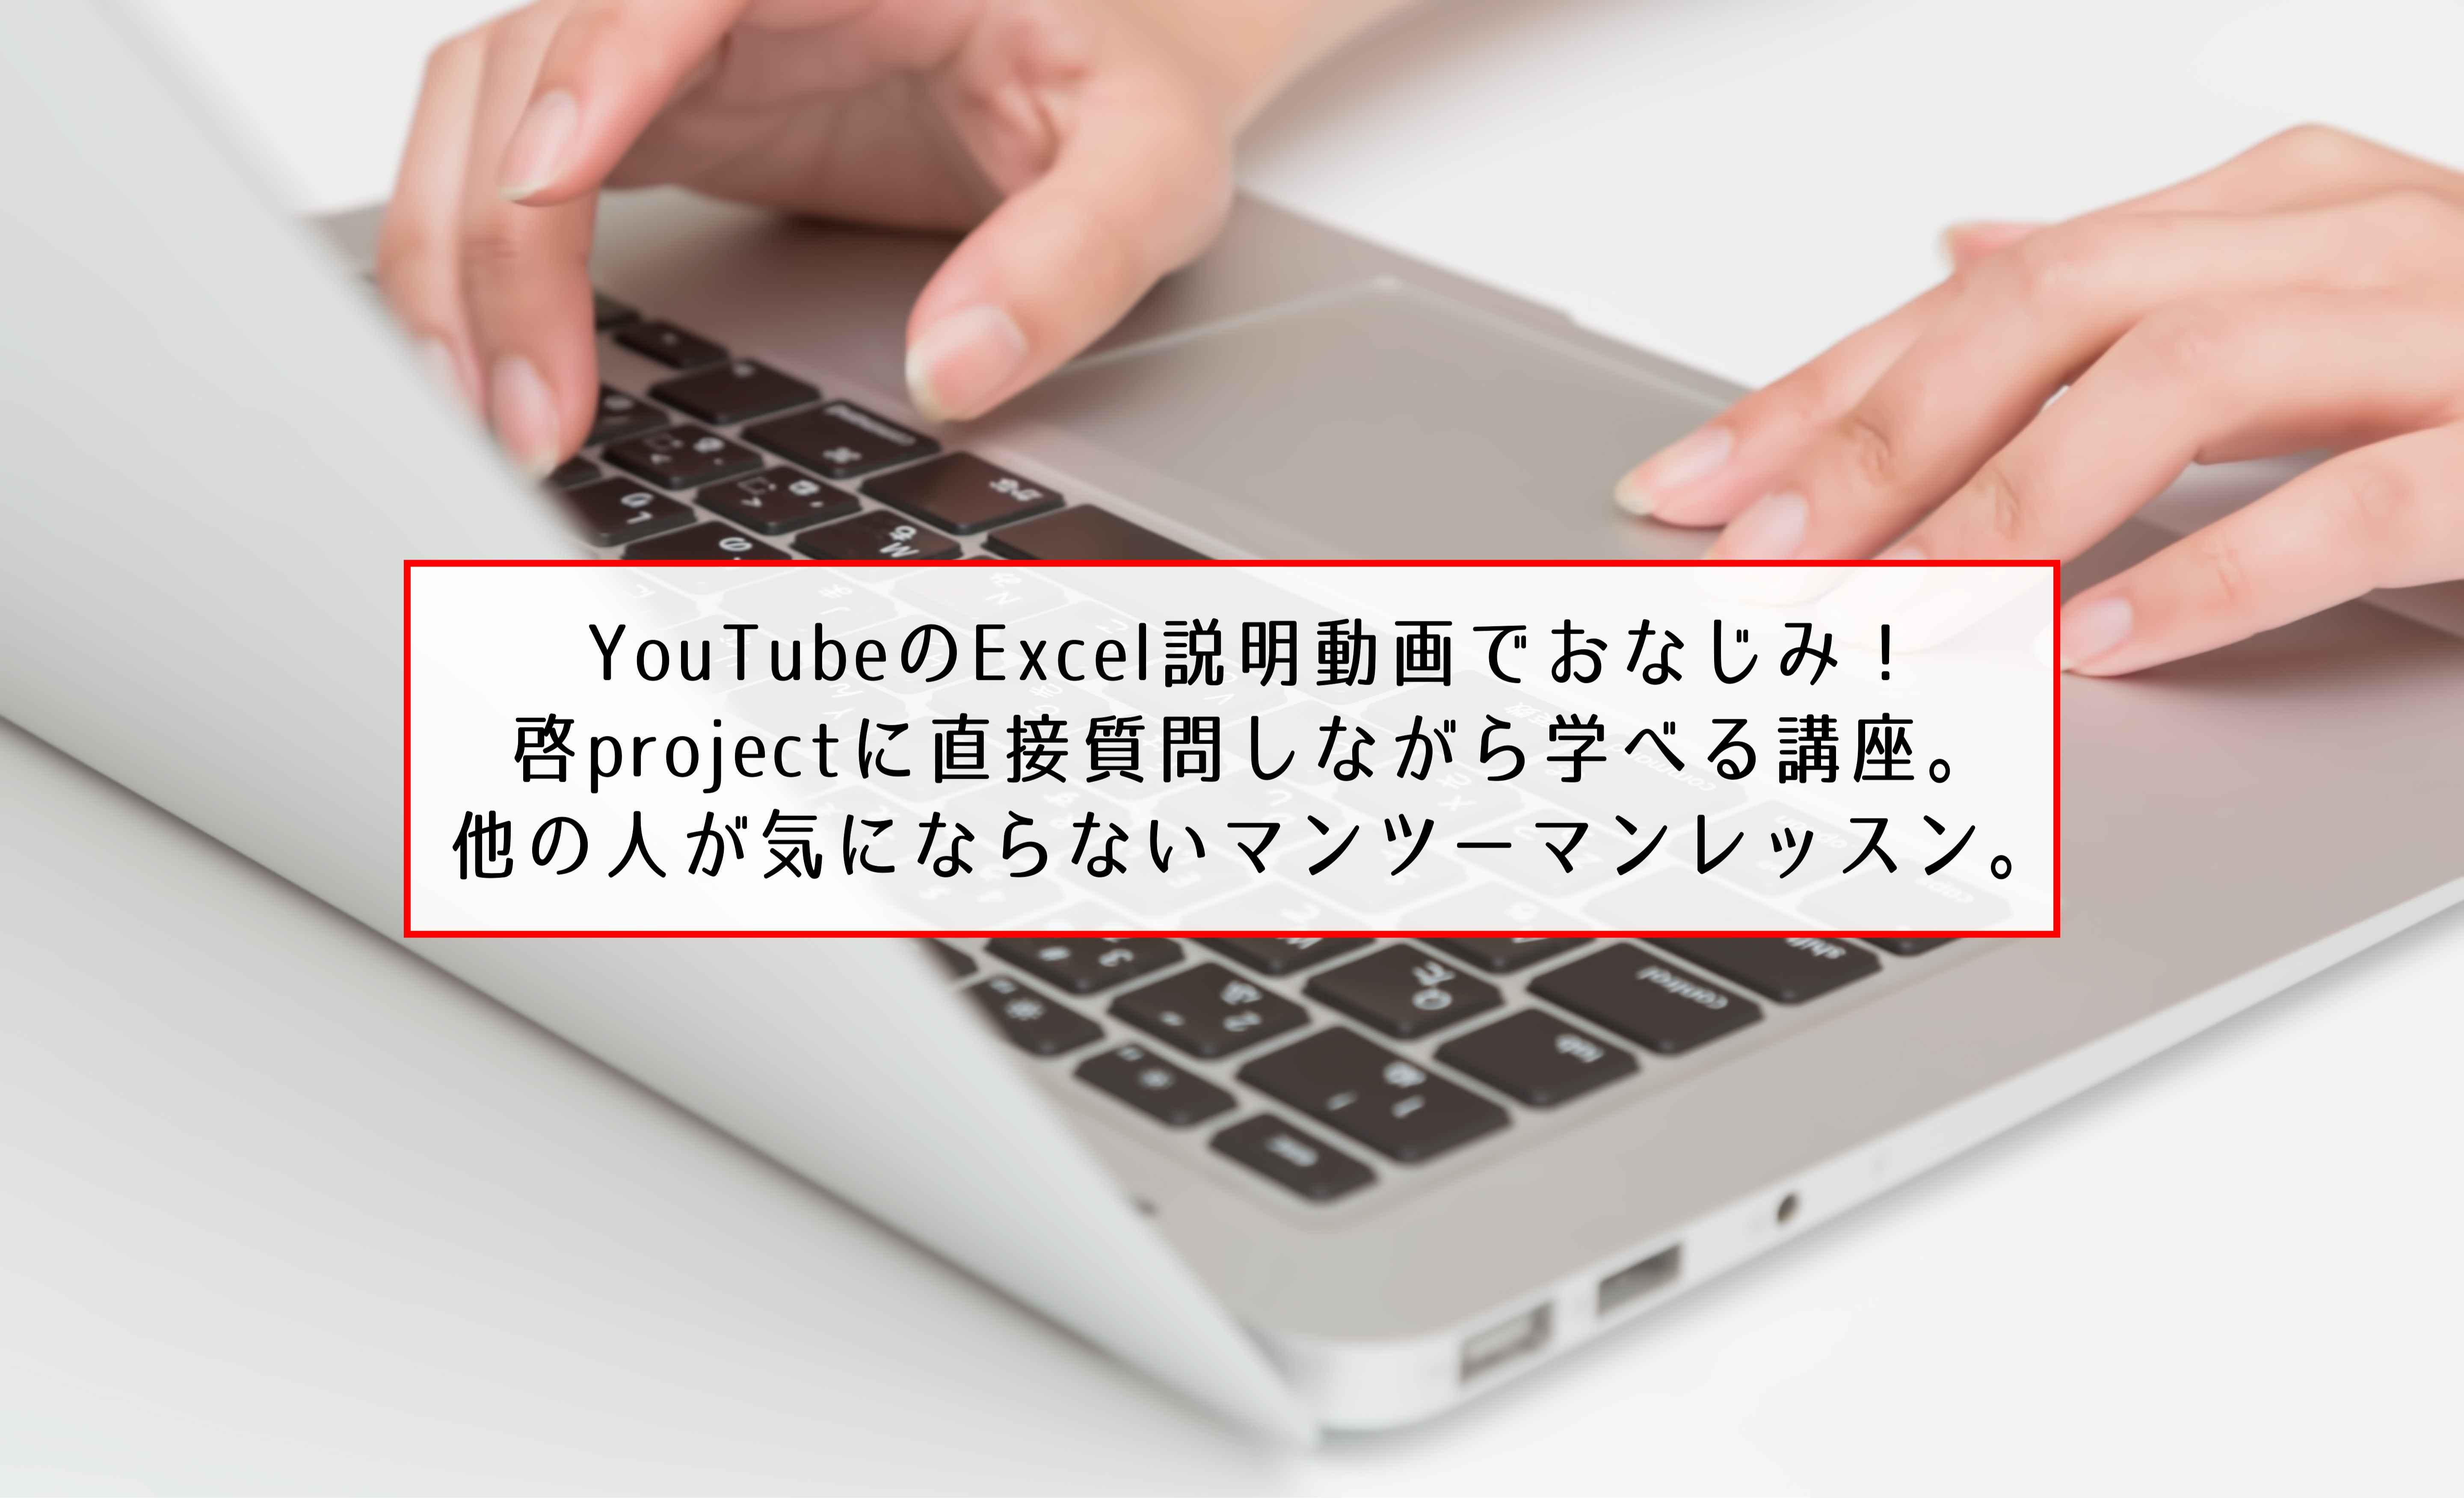 啓project